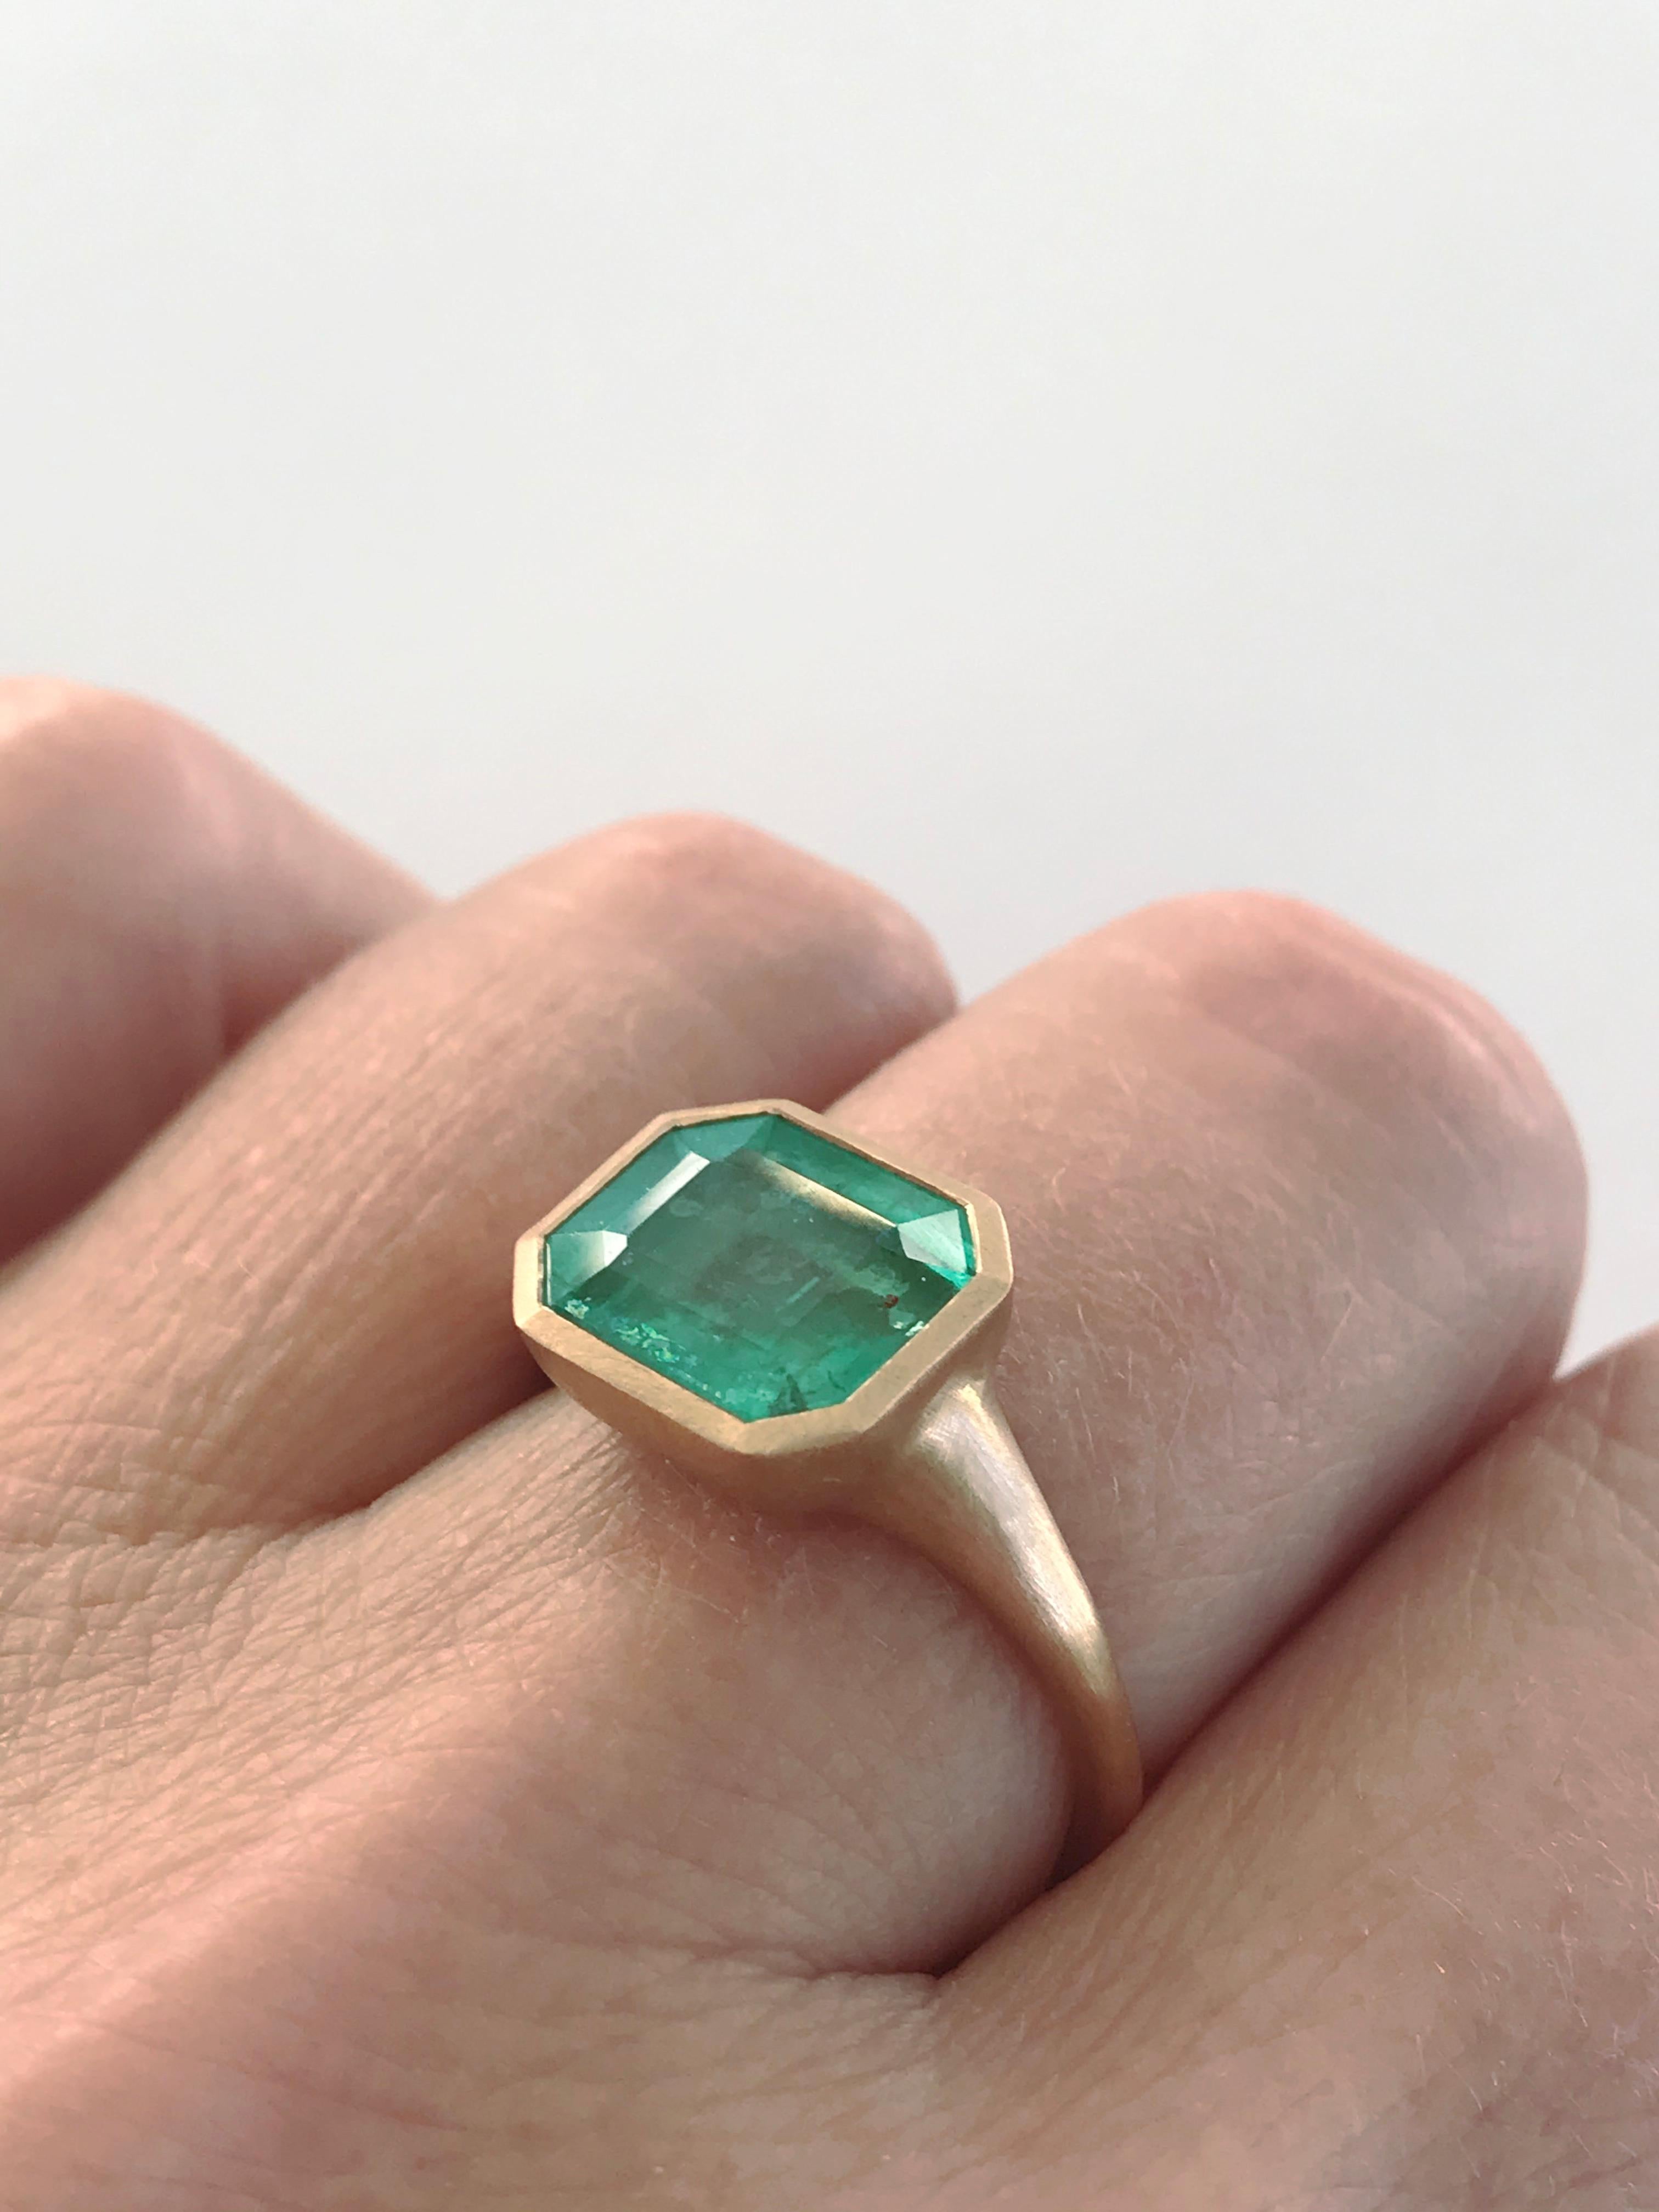 Dalben 4, 10 Carat Emerald Rose Gold Ring 8